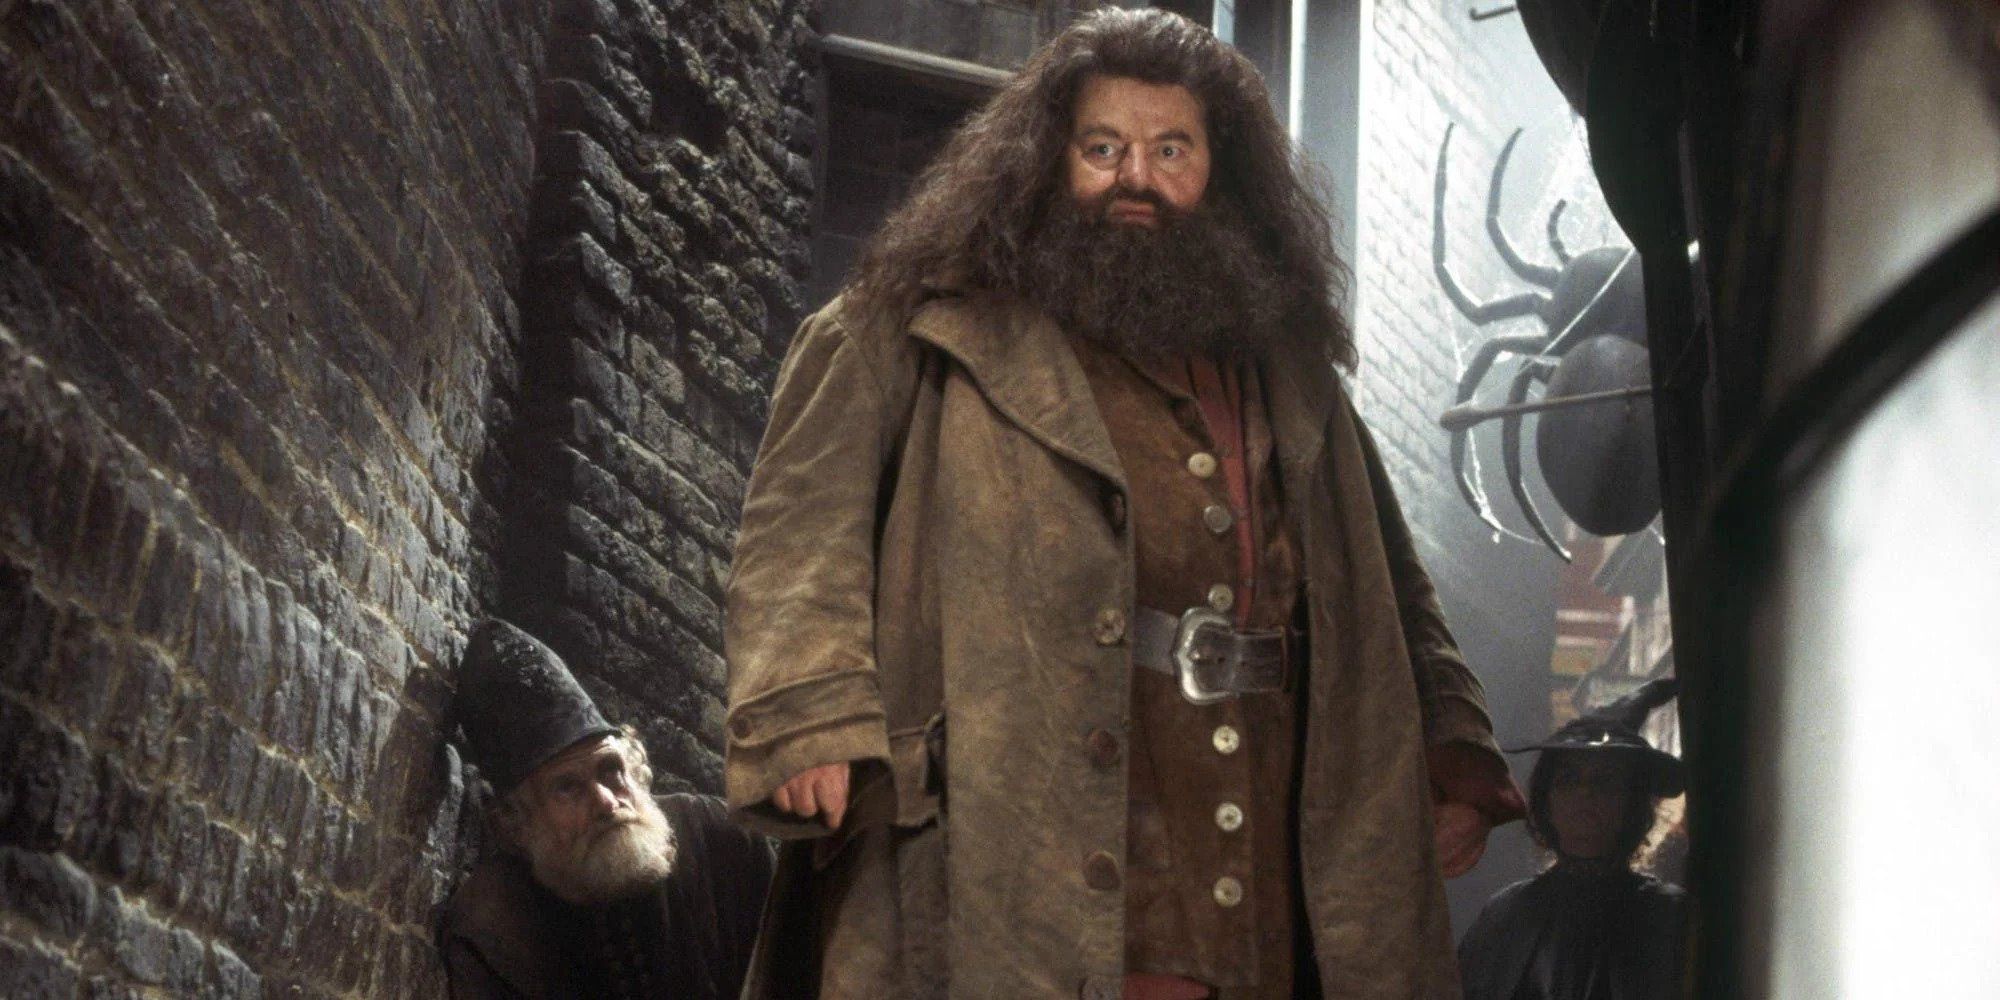 Hagrid mirando a alguien desde lo alto de unas escaleras en Harry Potter